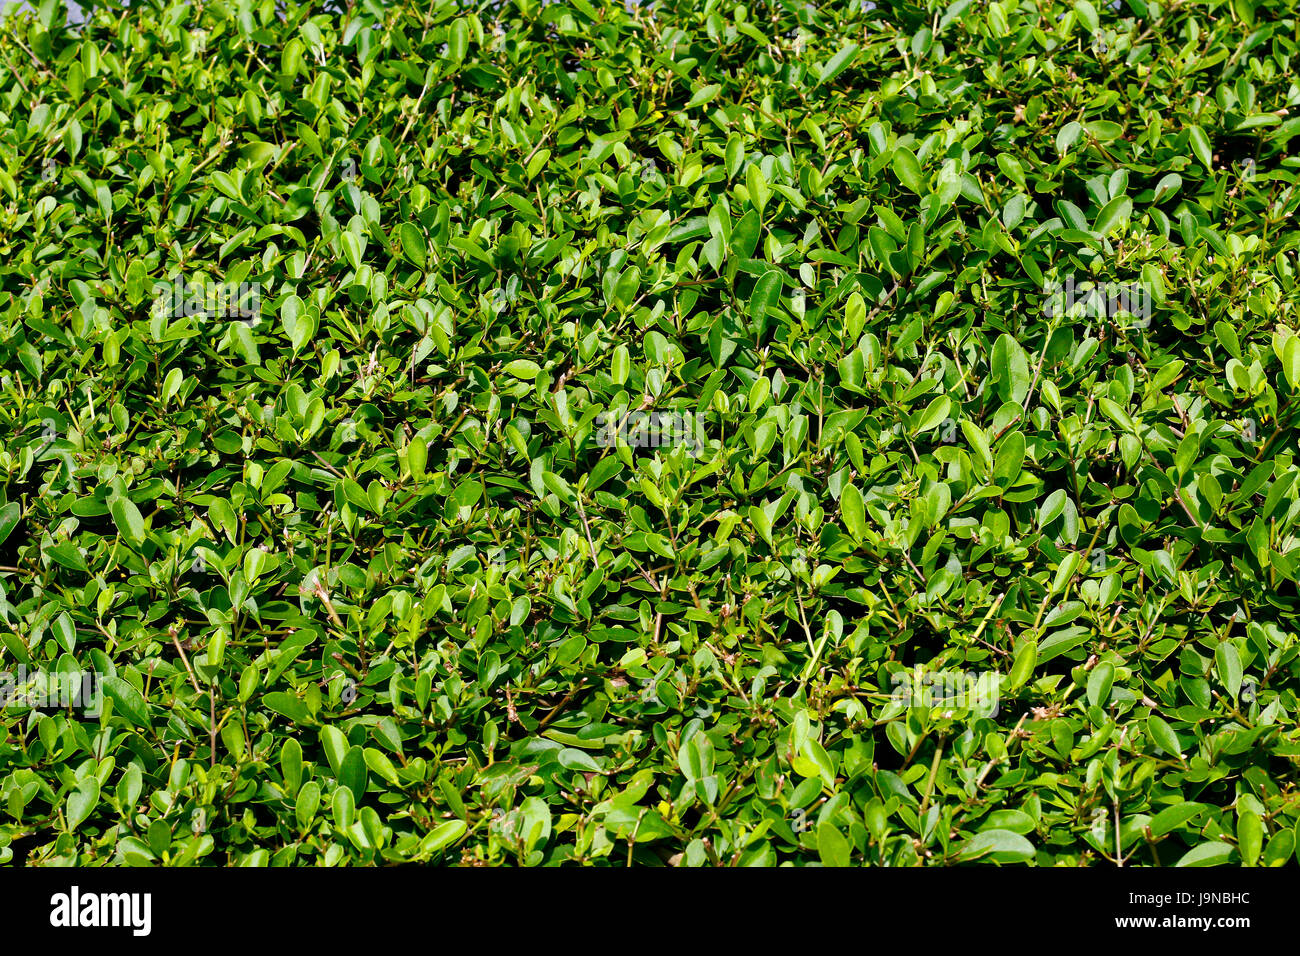 garden grass uniform texture top view Stock Photo